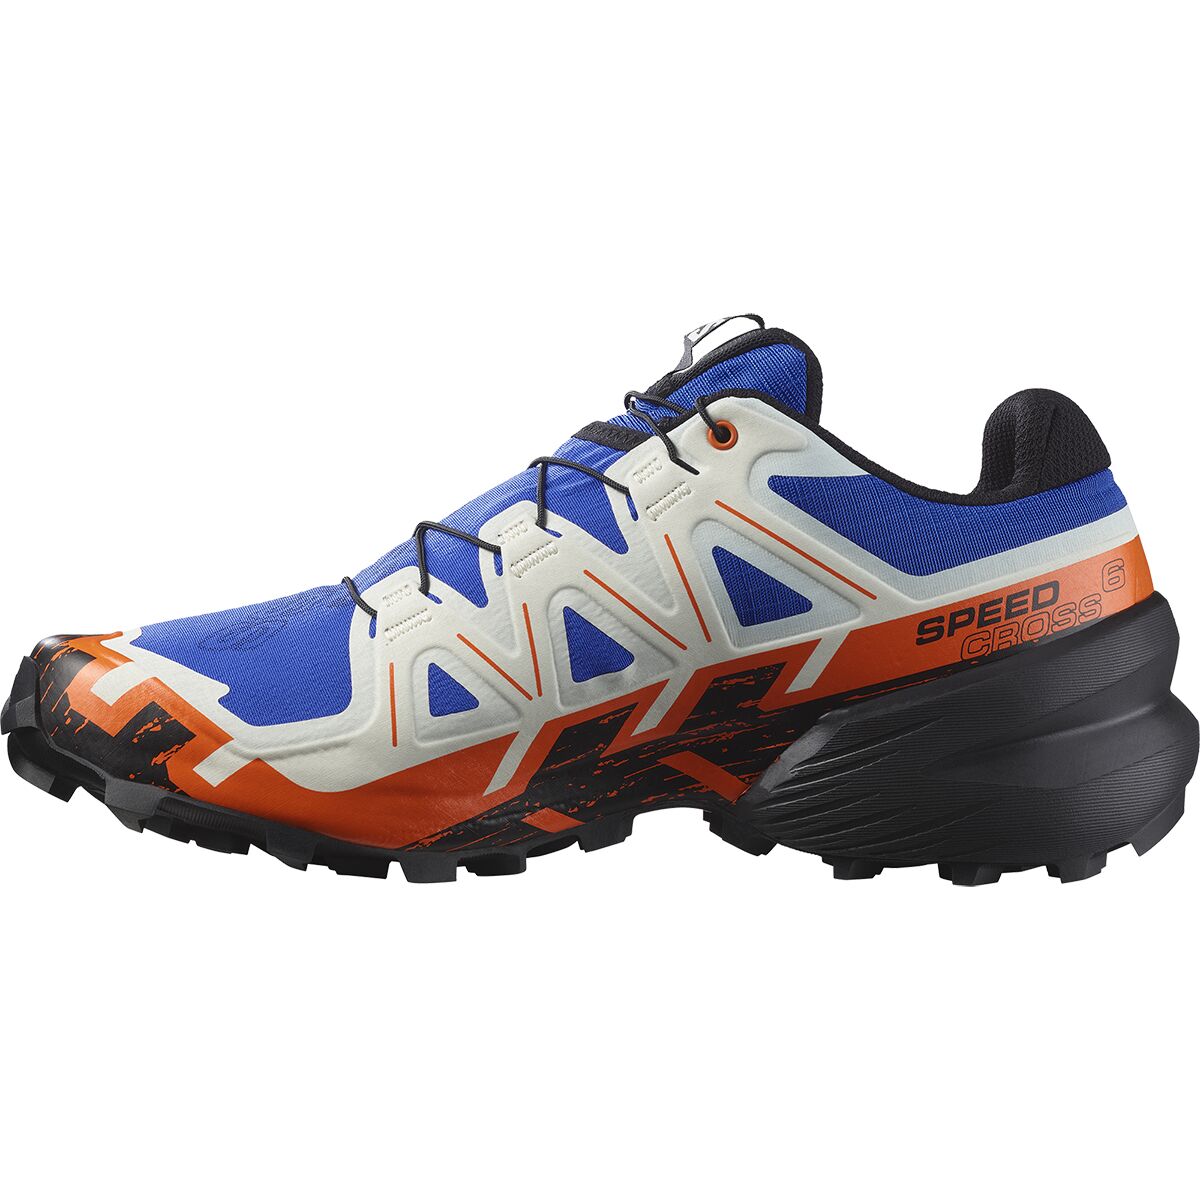 Optage fond Creek Salomon Speedcross 6 Trail Running Shoe - Men's - Footwear